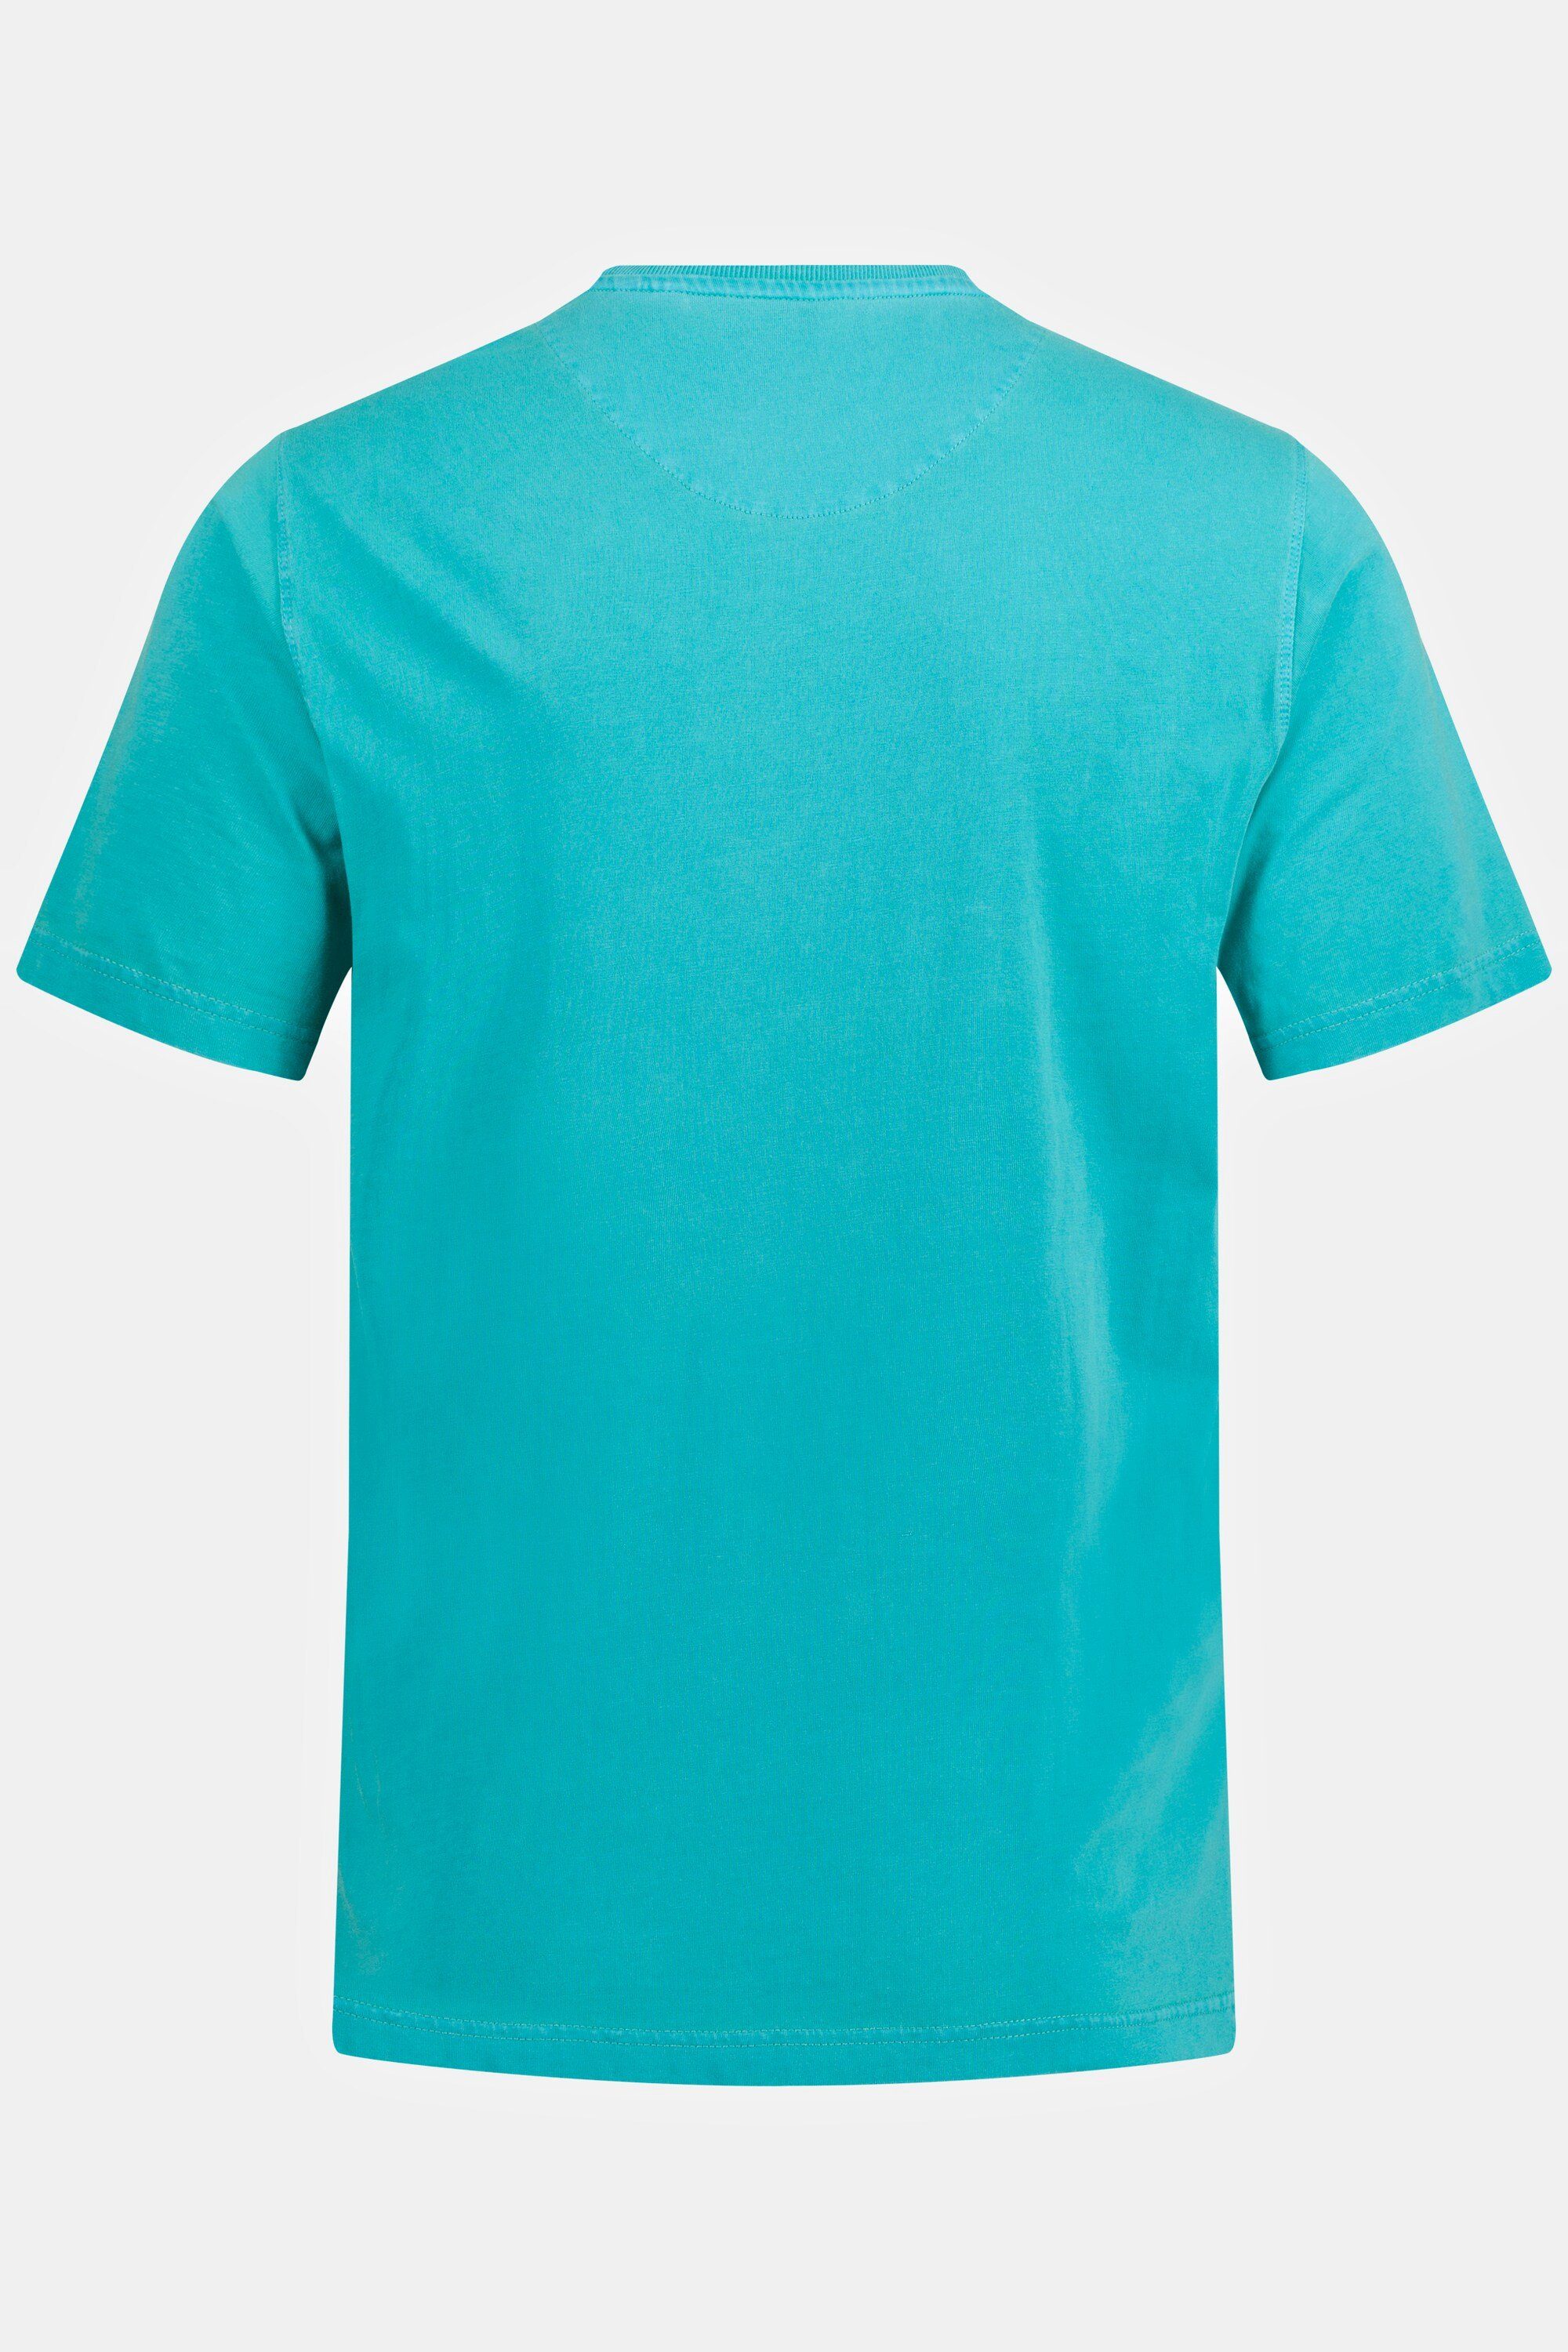 T-Shirt Brusttasche T-Shirt Halbarm dunkles türkis JP1880 Rundhals